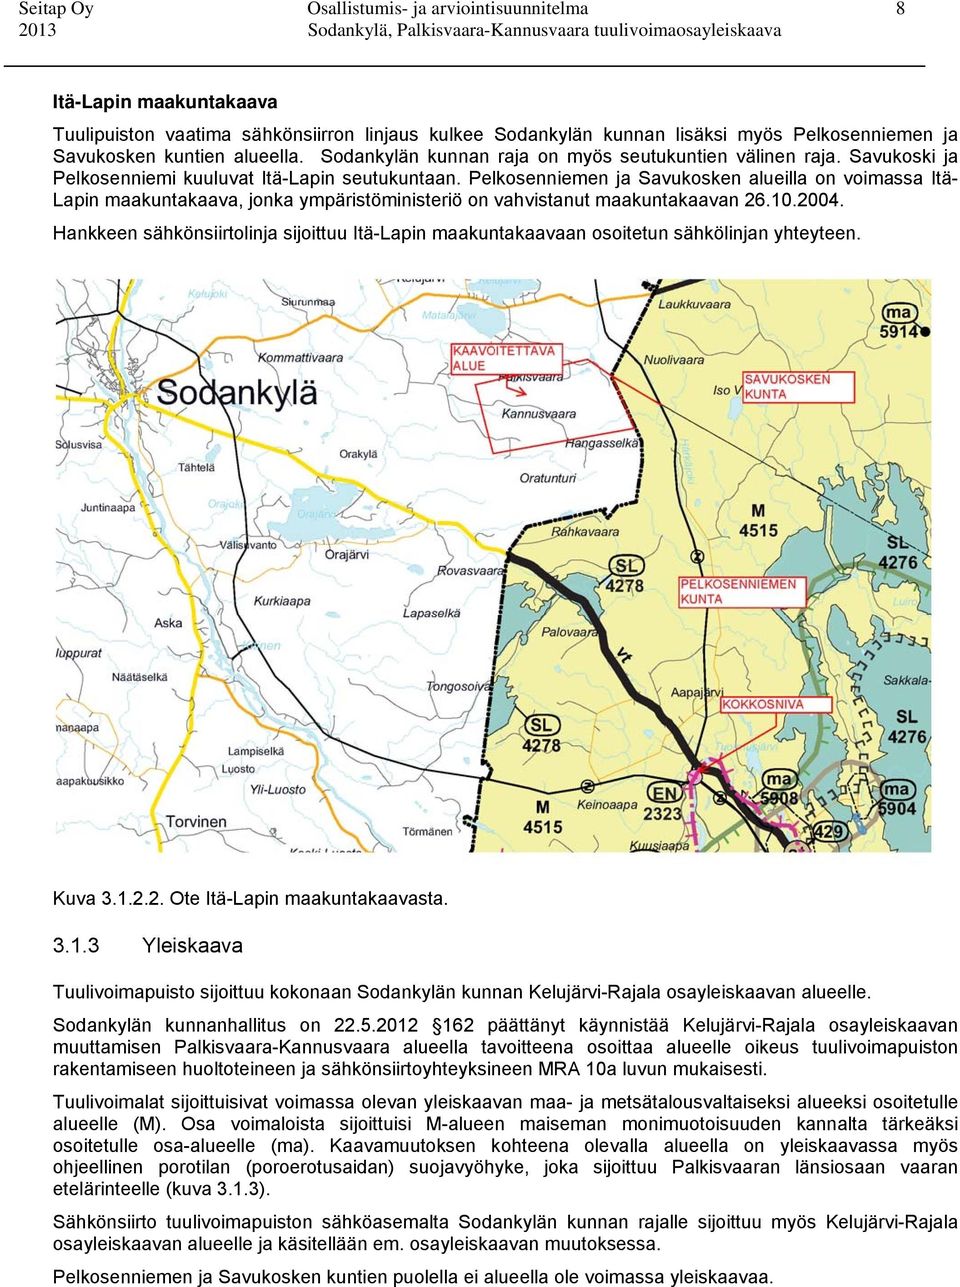 Pelkosenniemen ja Savukosken alueilla on voimassa Itä- Lapin maakuntakaava, jonka ympäristöministeriö on vahvistanut maakuntakaavan 26.10.2004.